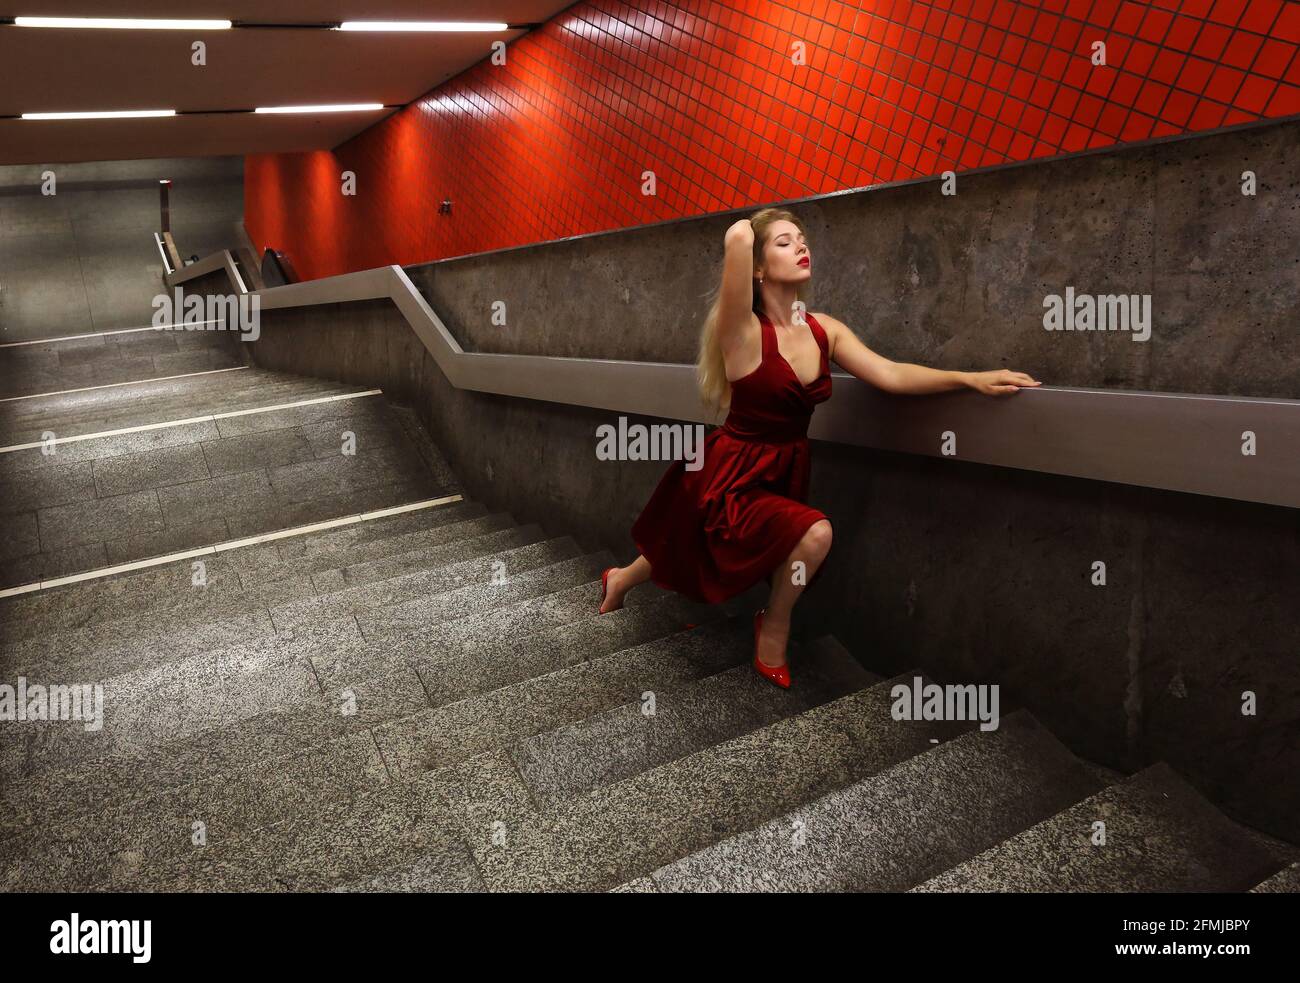 Nürnberg, U Bahn, Subway oder Metro a Nürnberg steht eine bionda junge Frau mit roten Kleid auf den Treppen zur Untergrundbahn Foto Stock